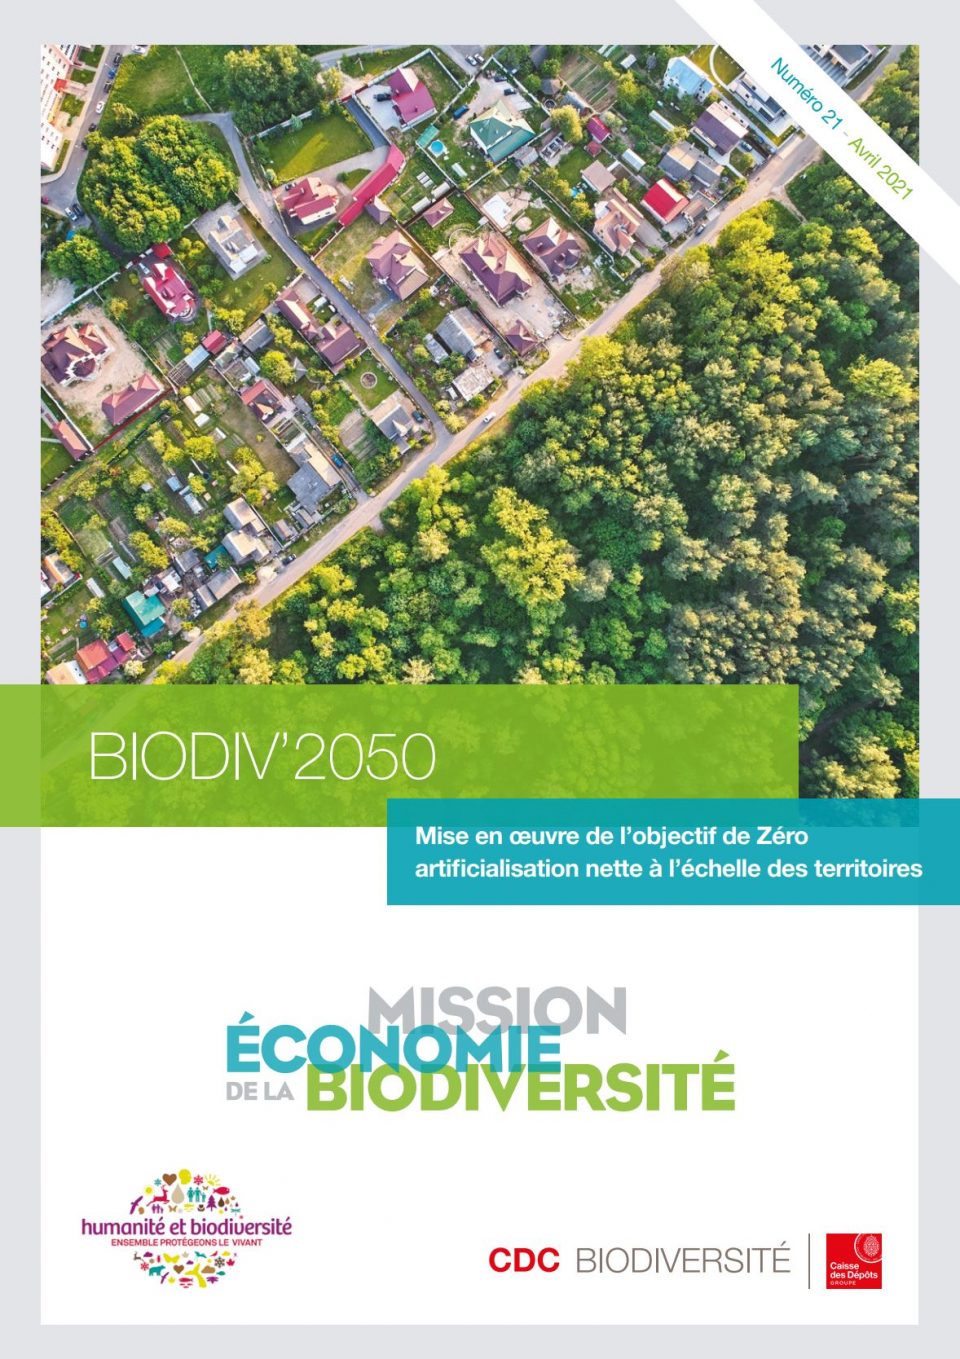 Biodiv 2050 - Mise en œuvre de l'objectif de Zéro artificialisation nette à l'échelle des territoires